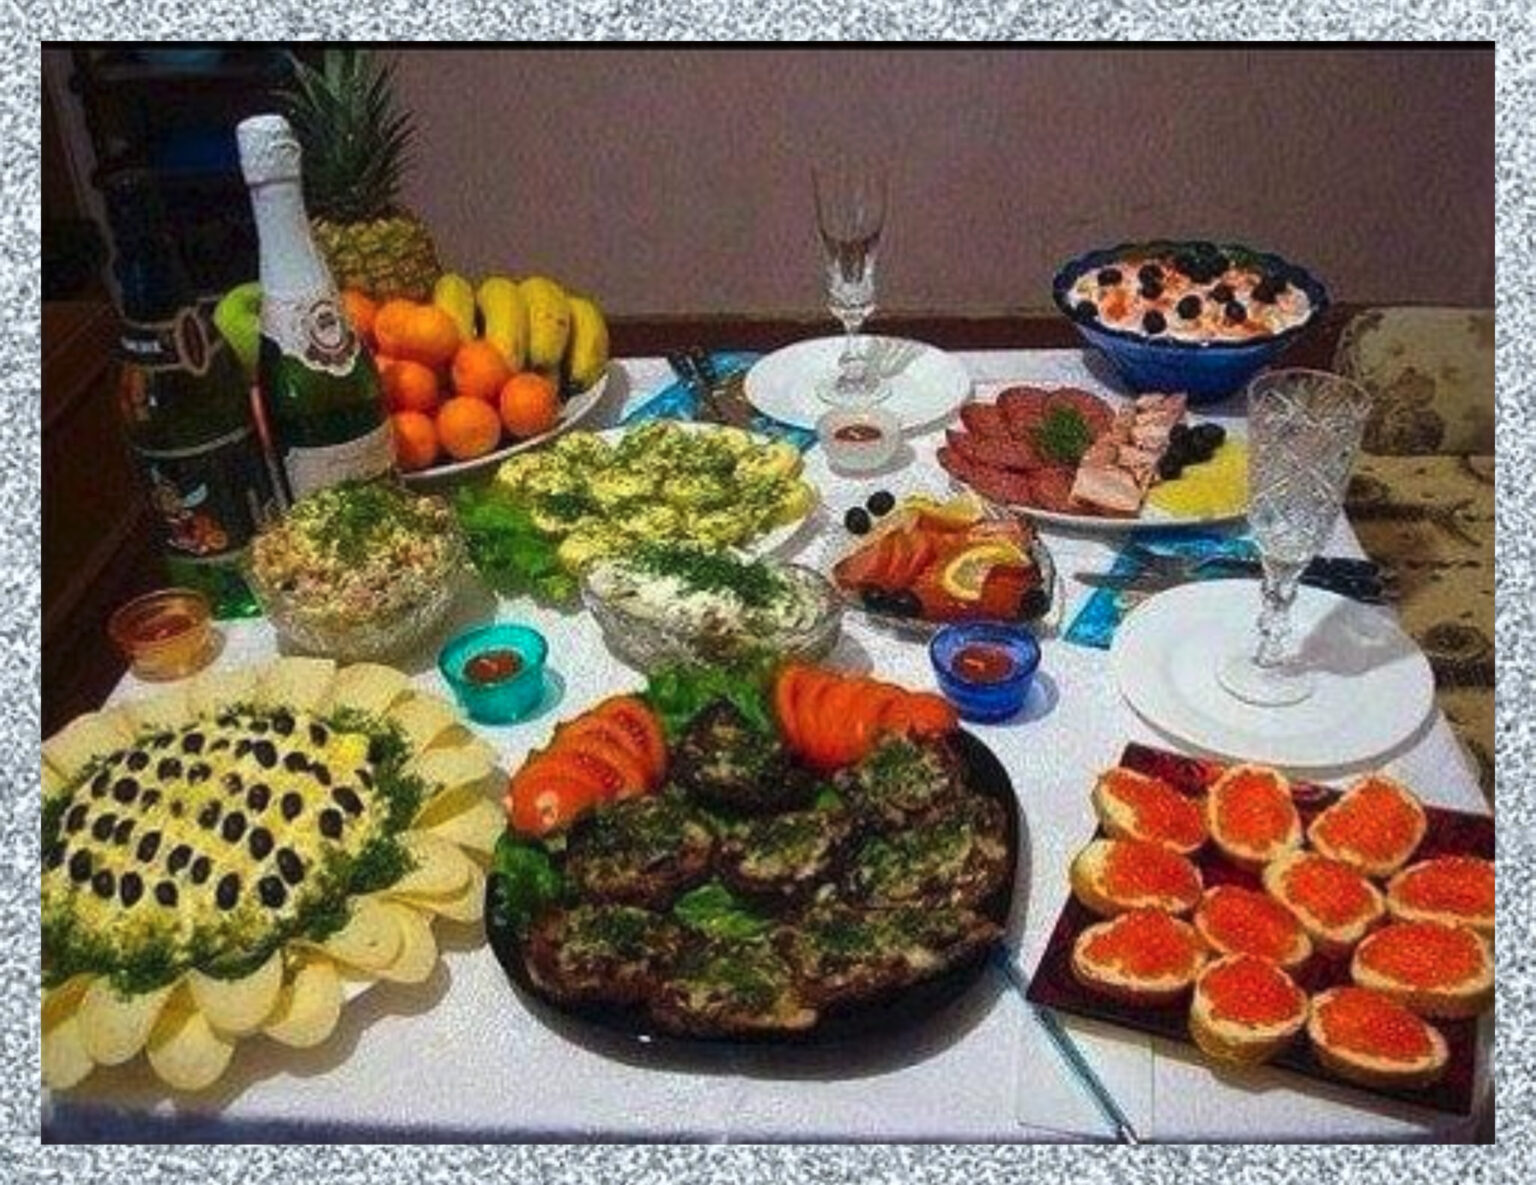 Фото стола с едой на день рождения в домашних условиях